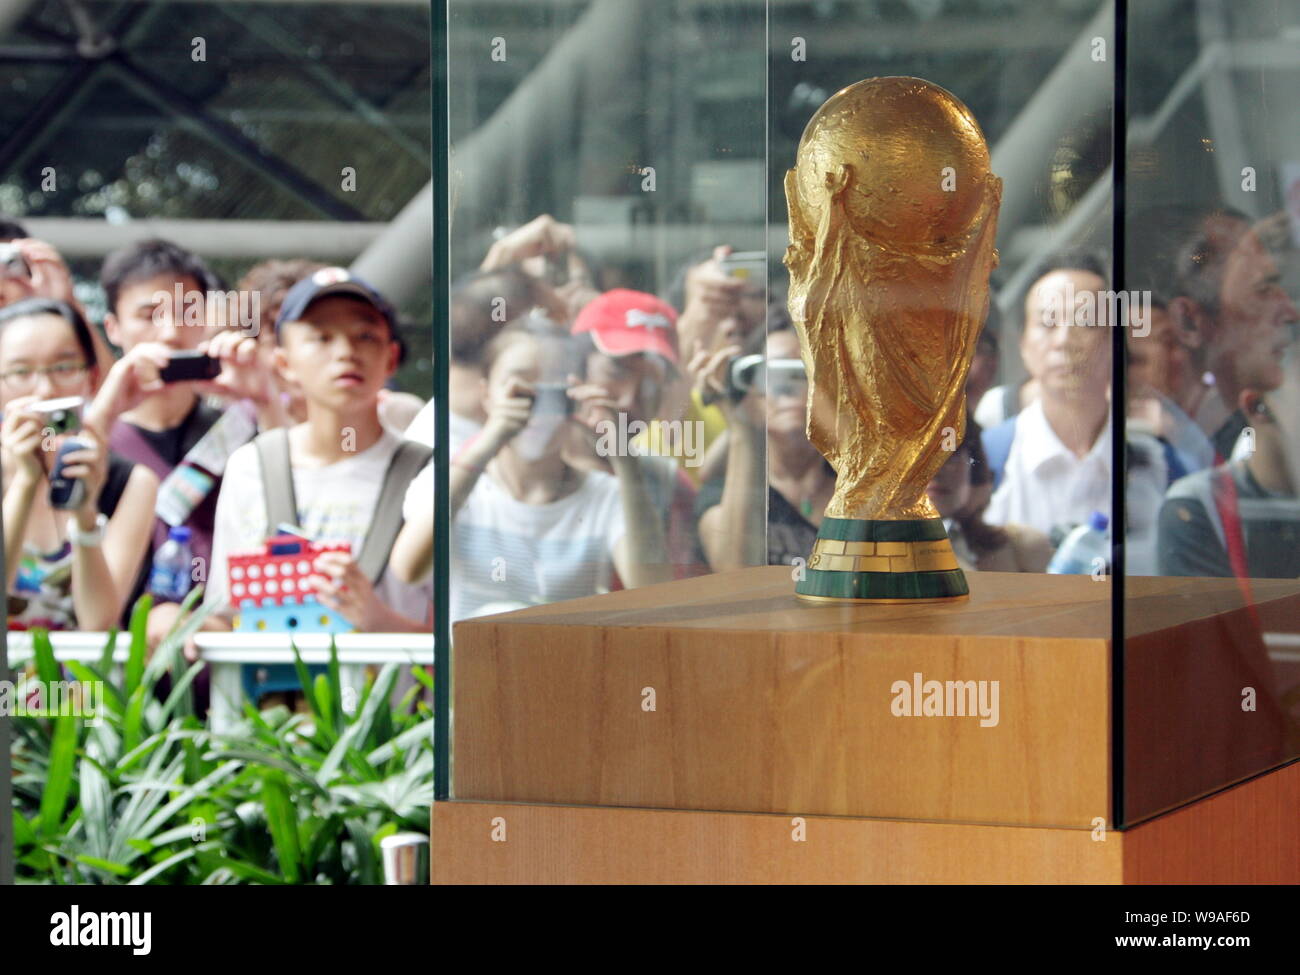 Besucher Blick auf die FIFA WM-Pokal (oder Jules Rimet Cup) im spanischen Pavillon auf der Weltausstellung in Shanghai, China, 30. August 2010. Die Stockfoto